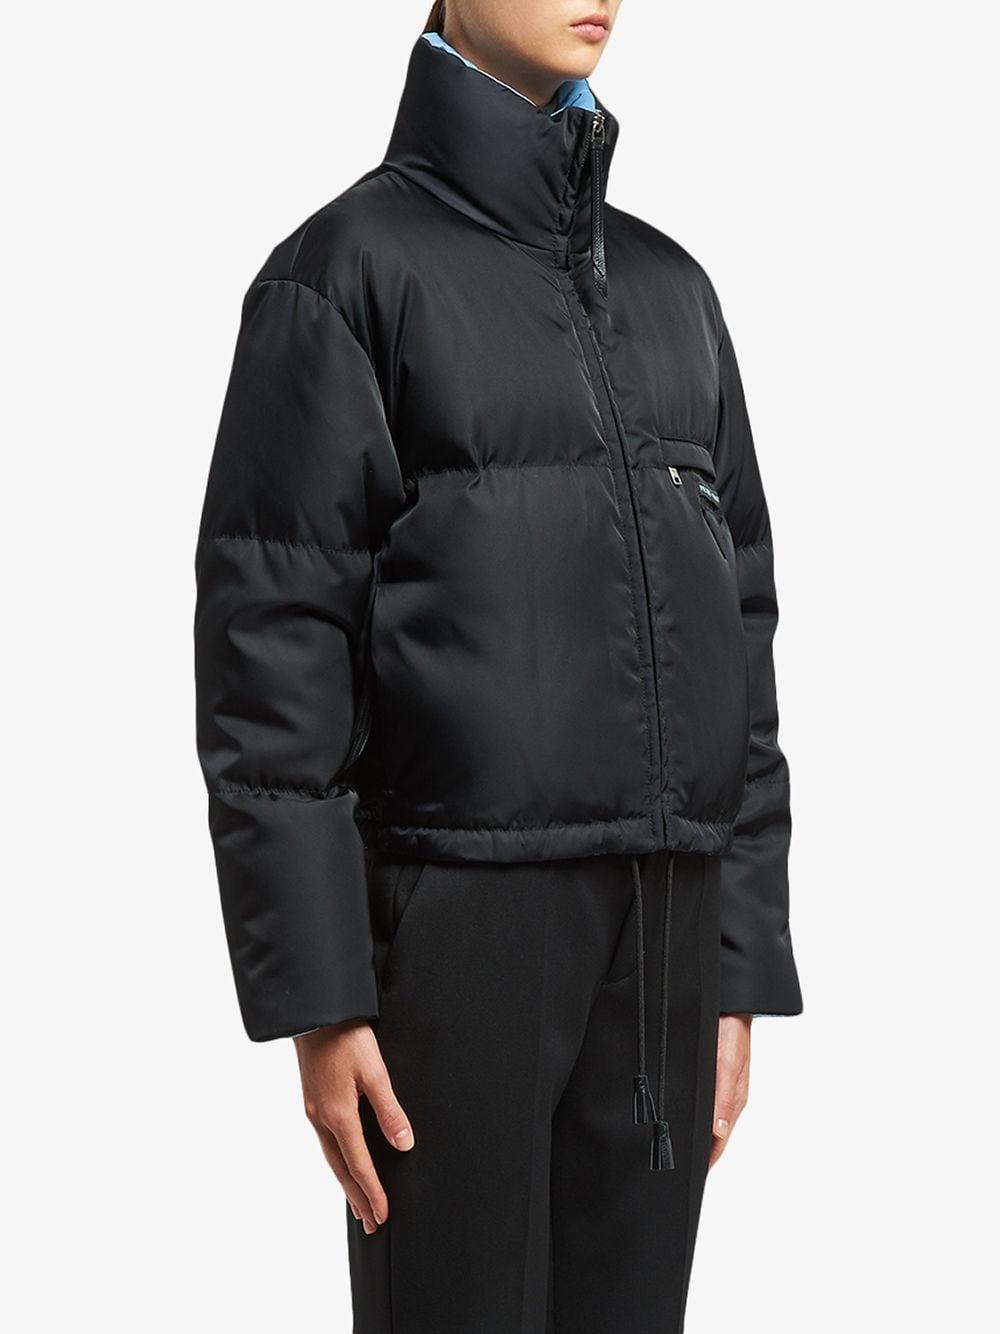 Prada Nylon Cropped Puffer Jacket in Black | Lyst Canada